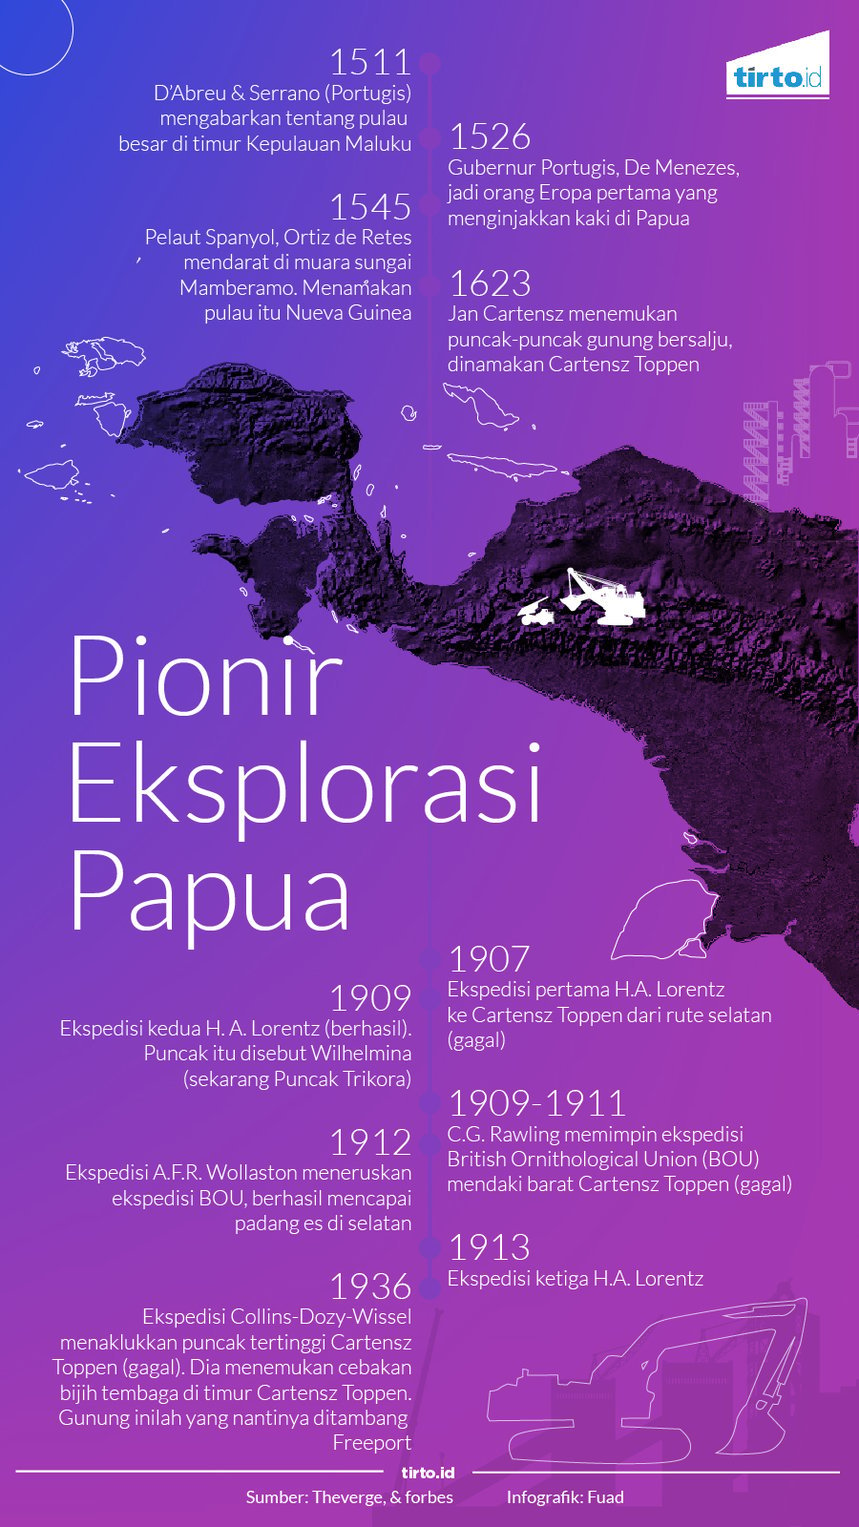 Infografik Pionir eksplorasi papua